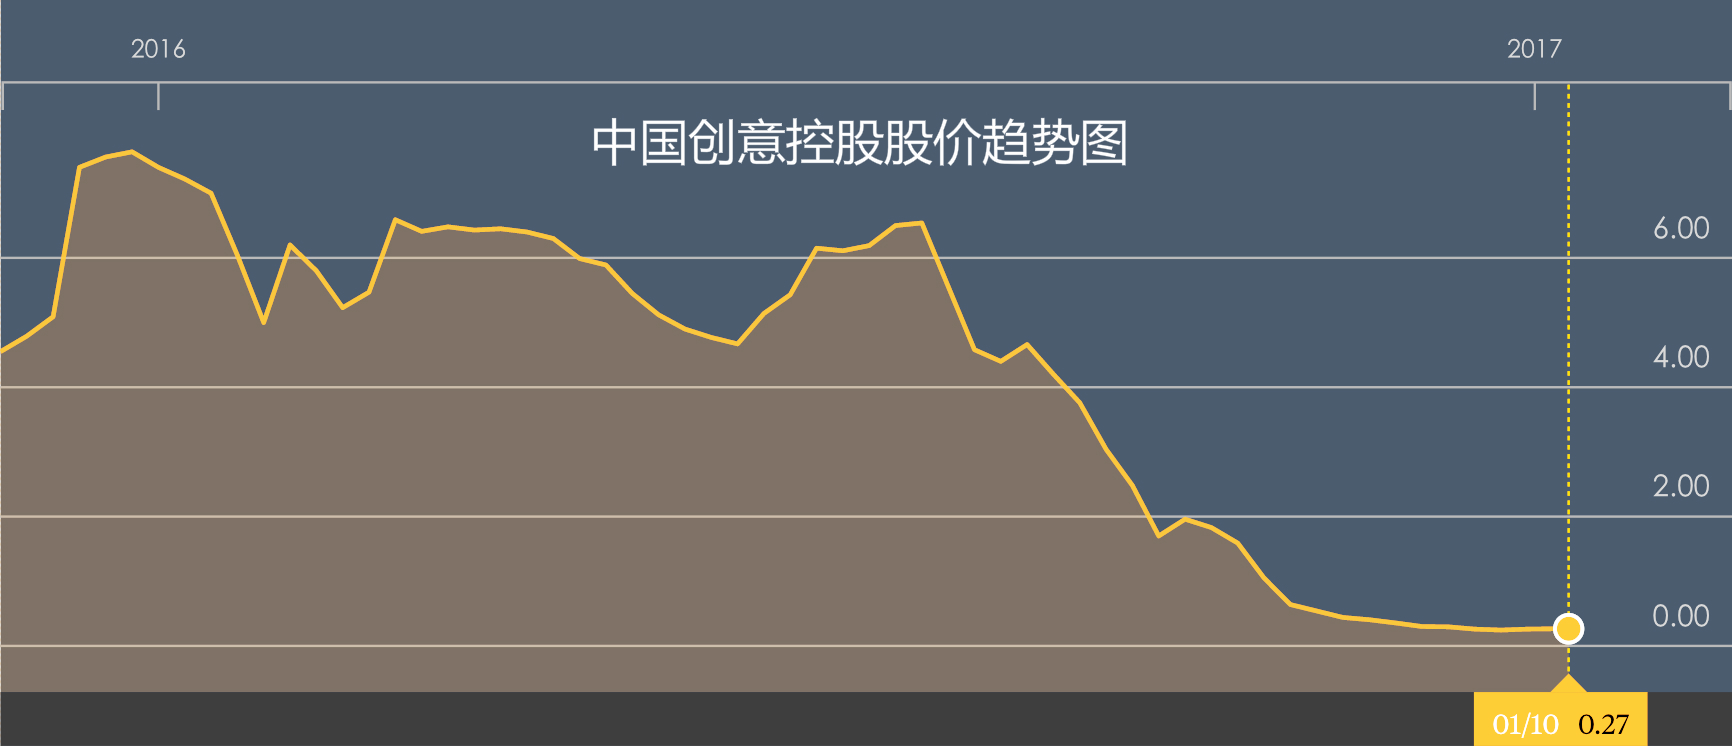 中国创意控股股价趋势图.jpg